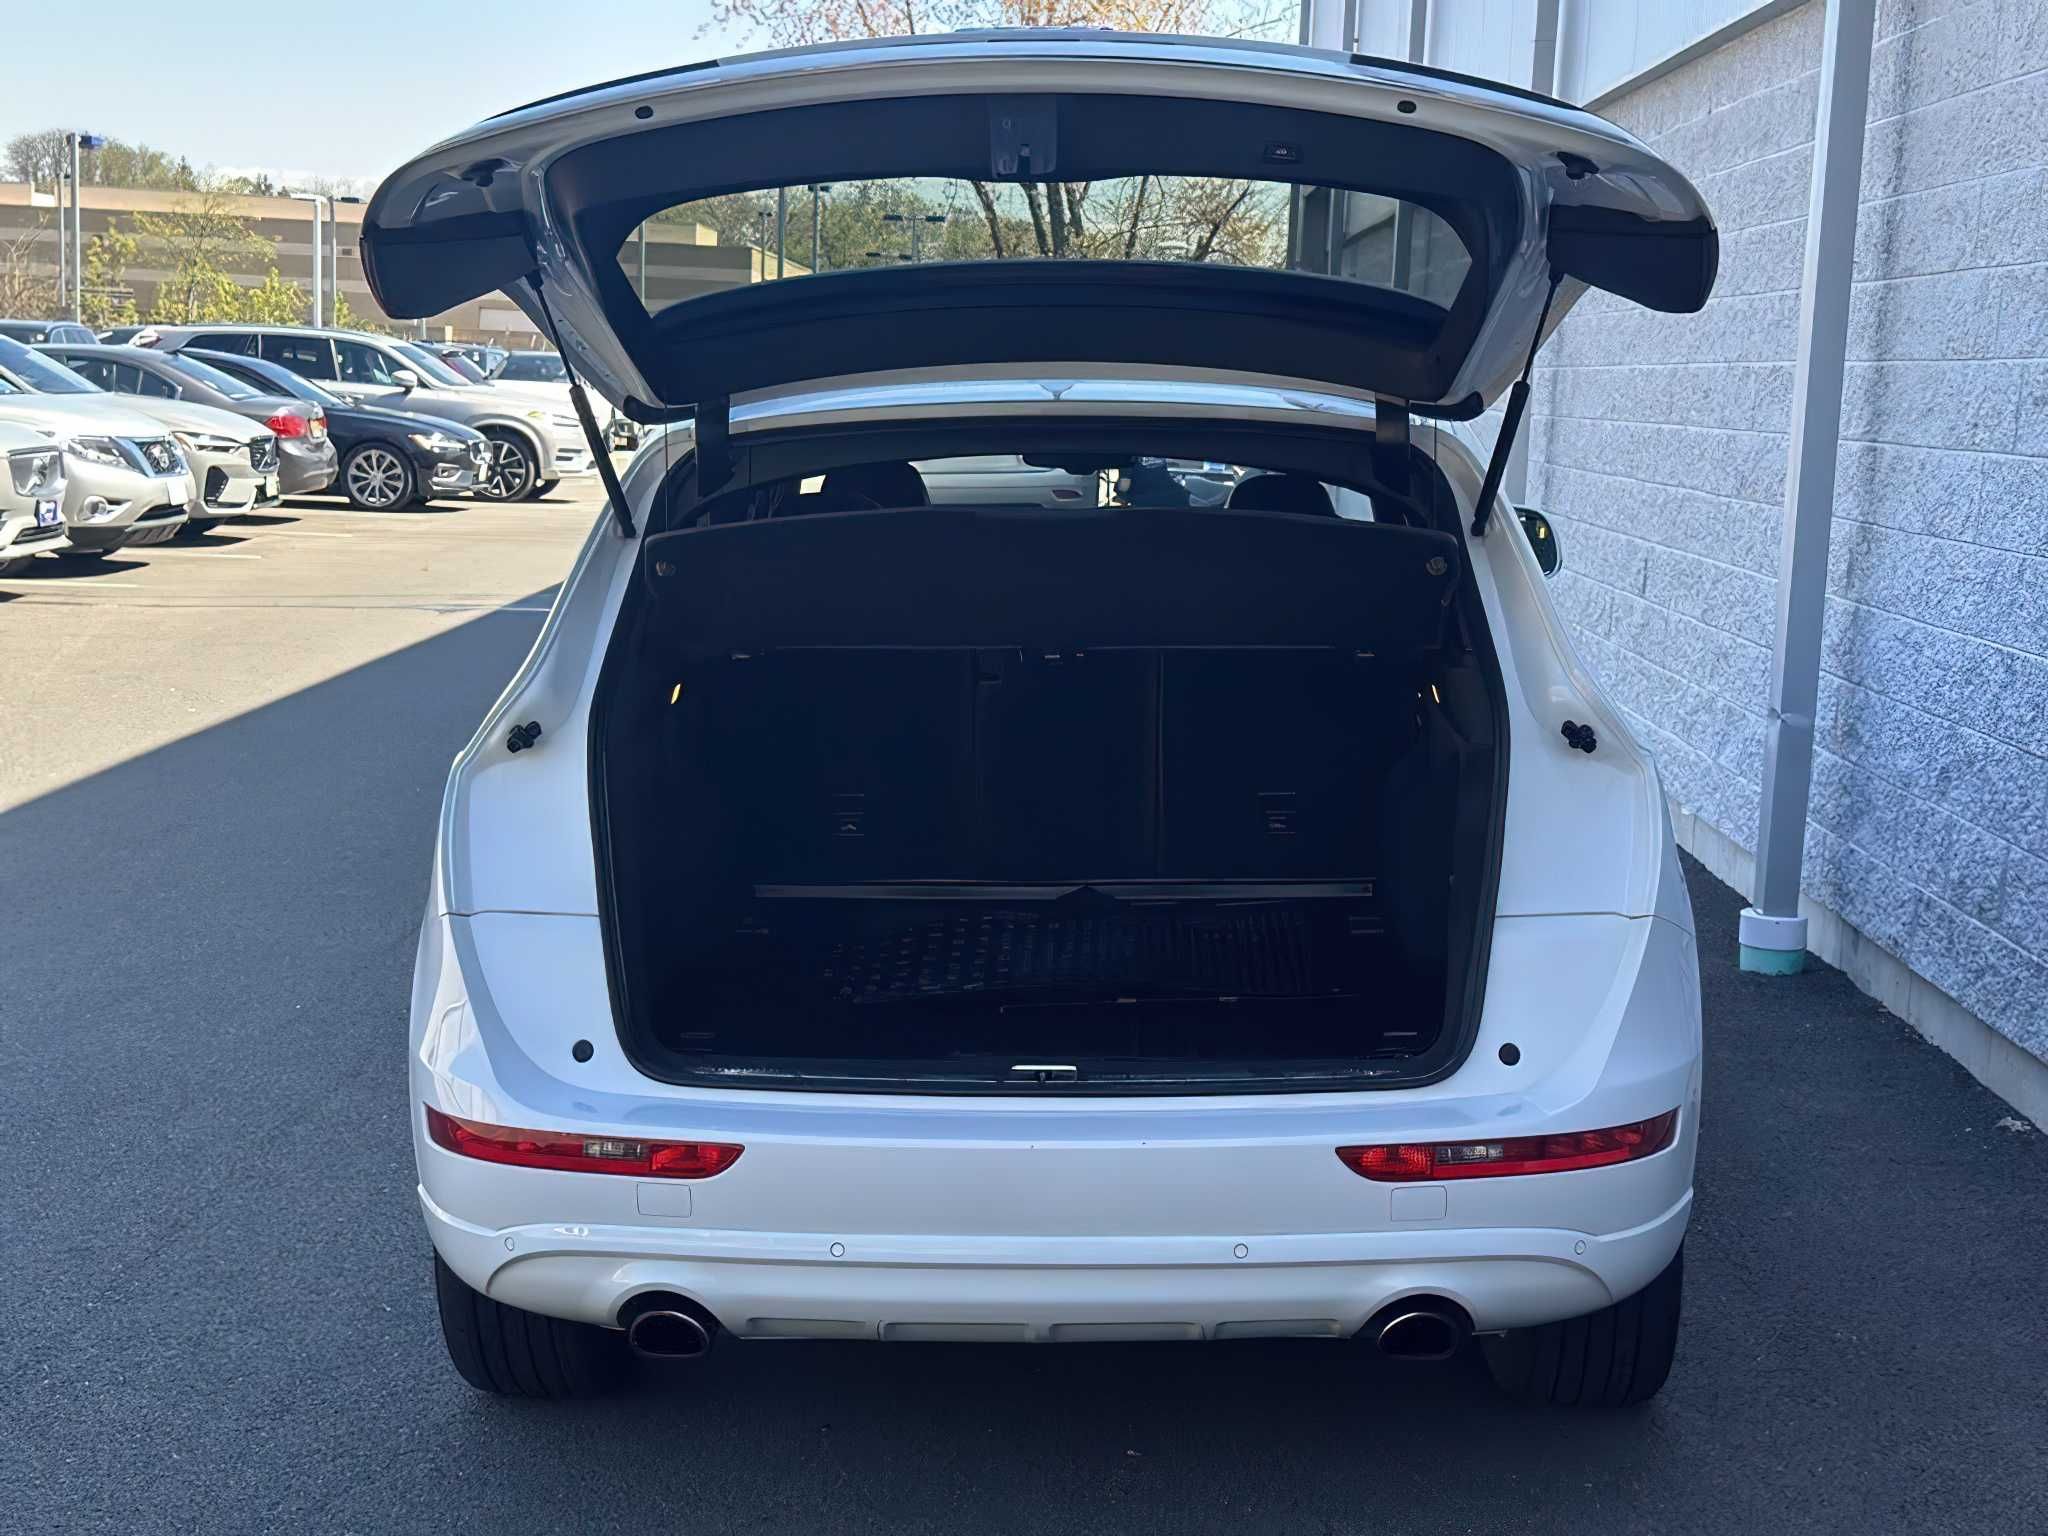 Audi Q5 2016 White